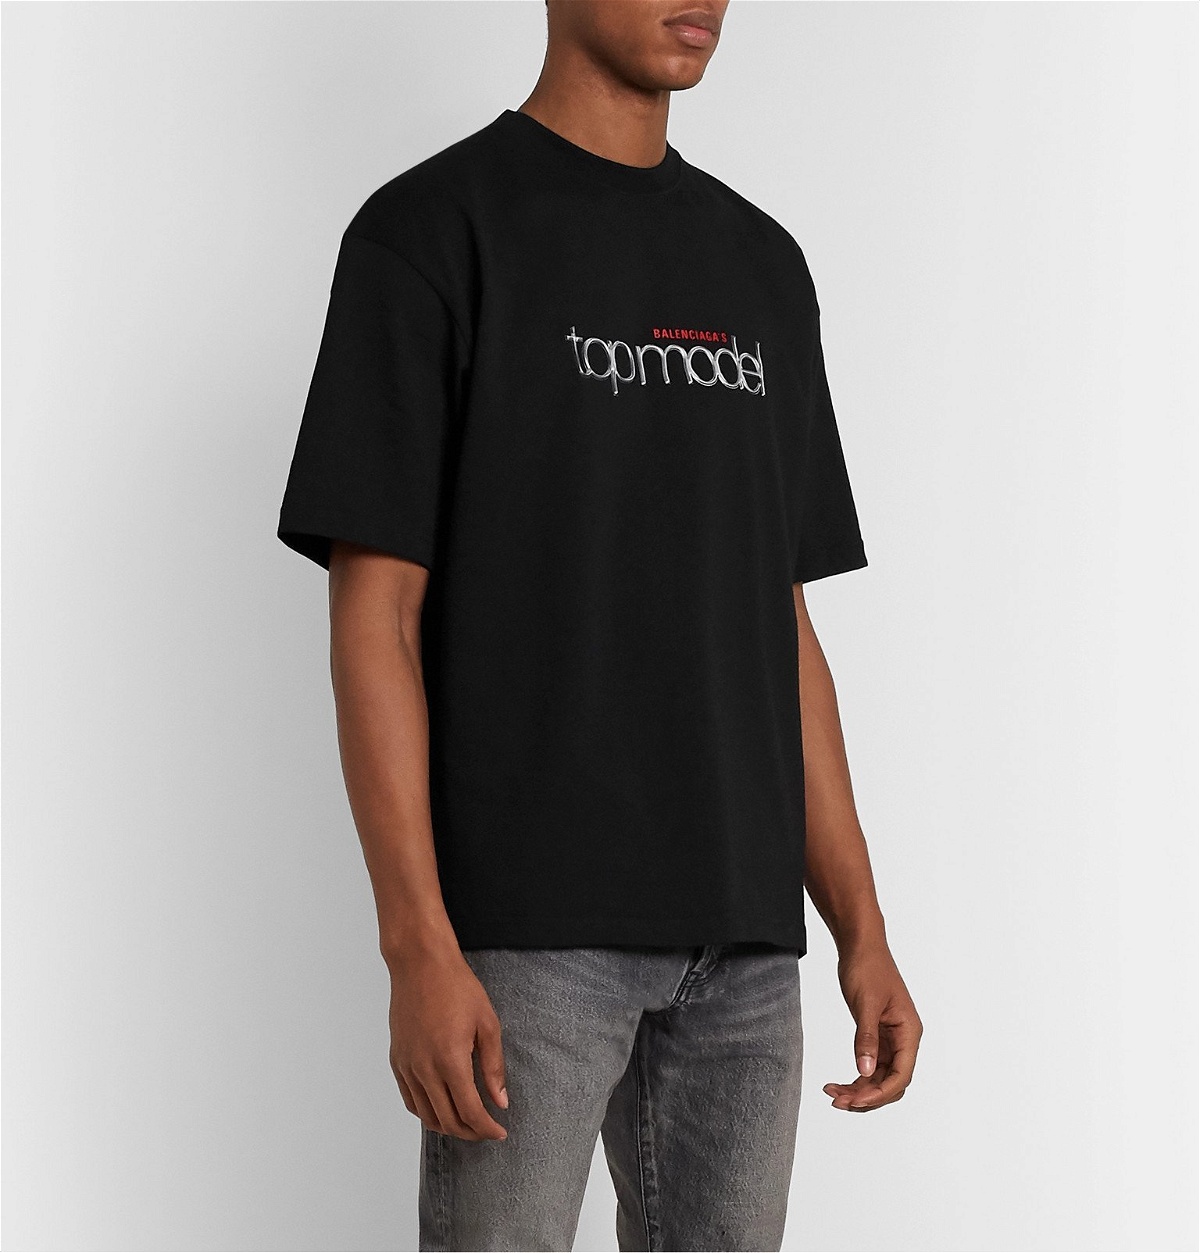 T-Shirt Black Balenciaga - Appliquéd Top Logo-Print - Balenciaga Cotton-Jersey Model